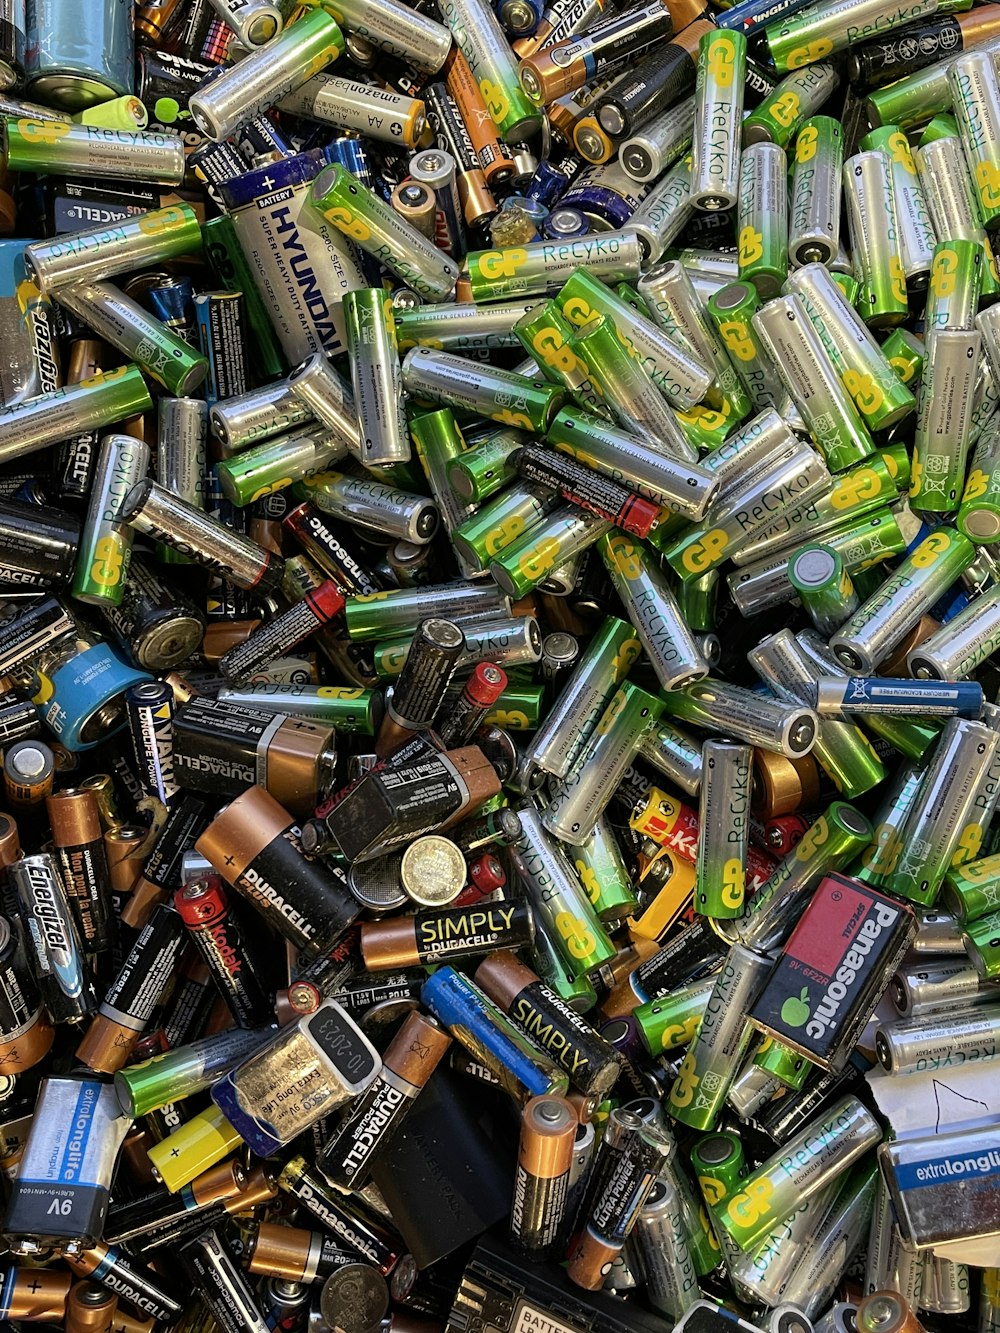 Ein Haufen Batterien, die sehr dicht beieinander liegen